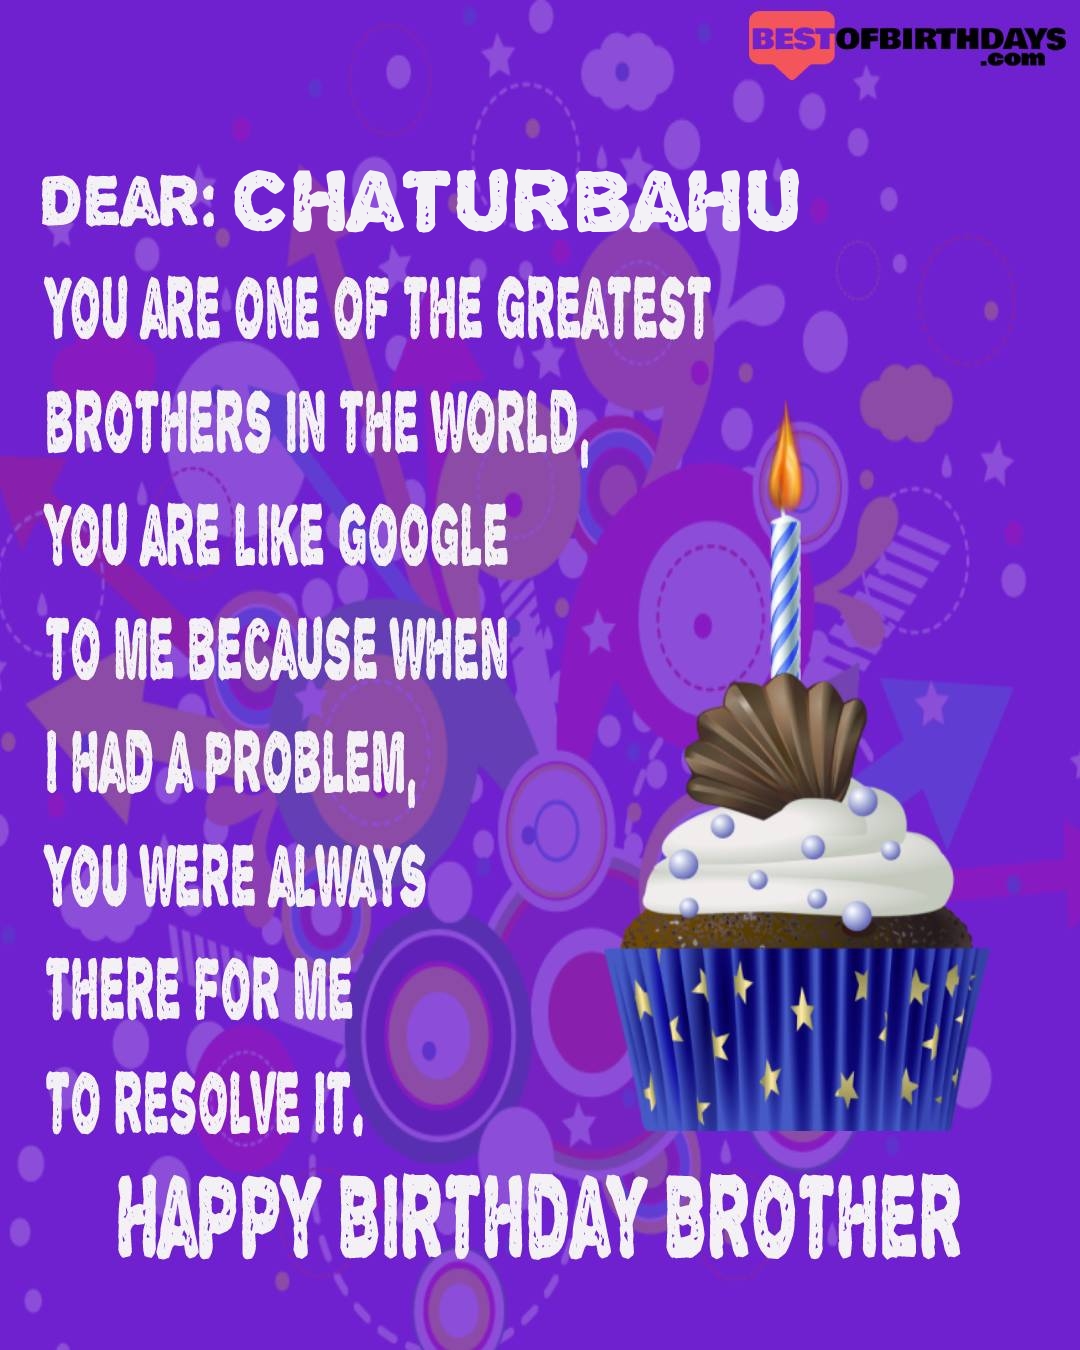 Happy birthday chaturbahu bhai brother bro